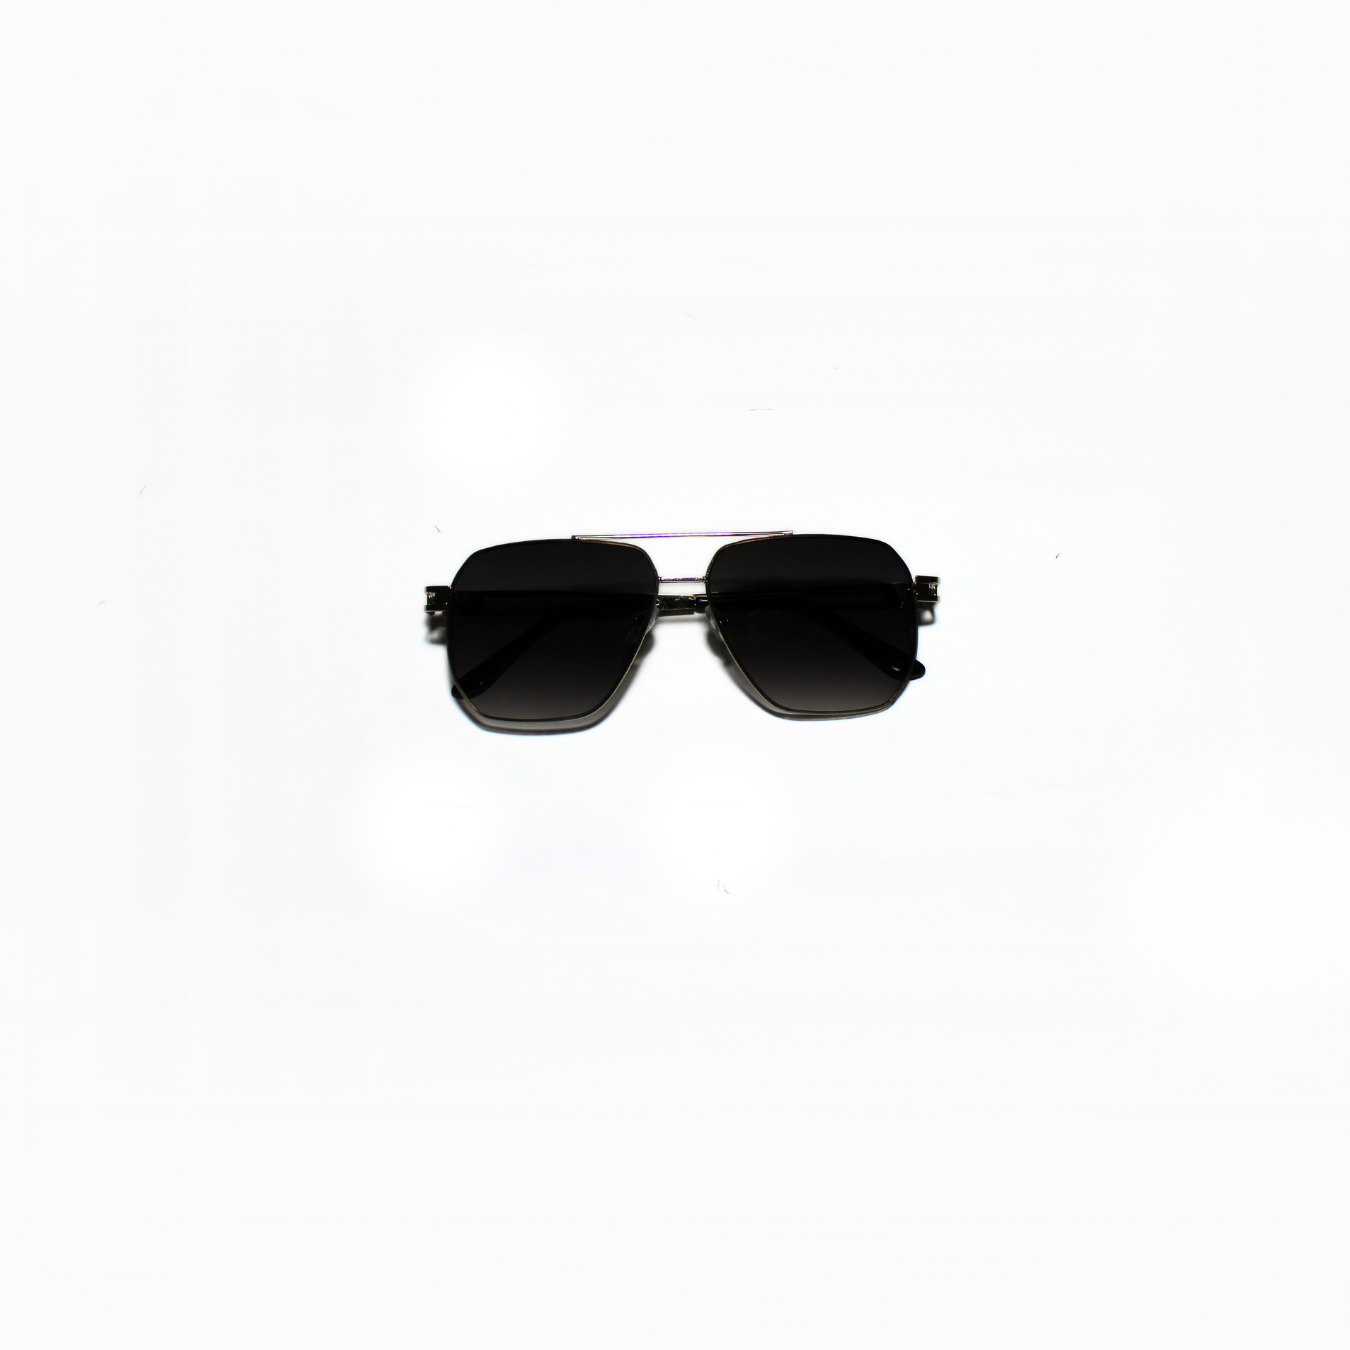 ARTHUR-I//005 I Sunglasses for Women - Specsview